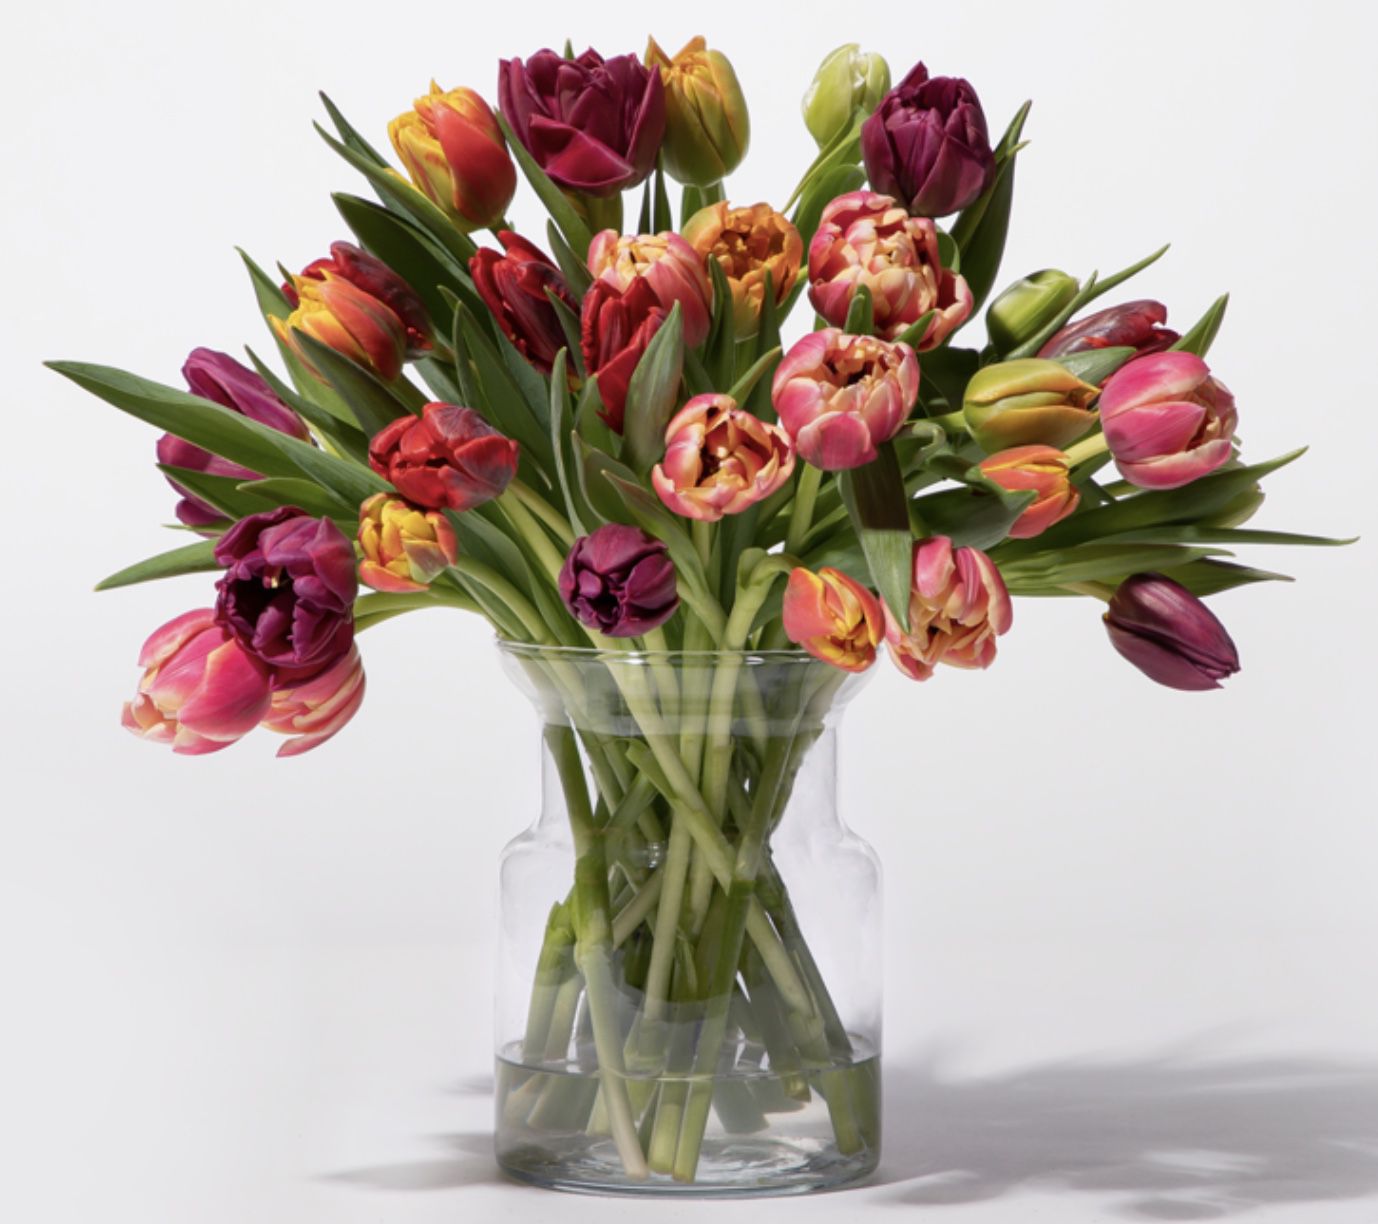 Bunte Tulpen mit 30 Stielen für 9,99€ inkl. Versand